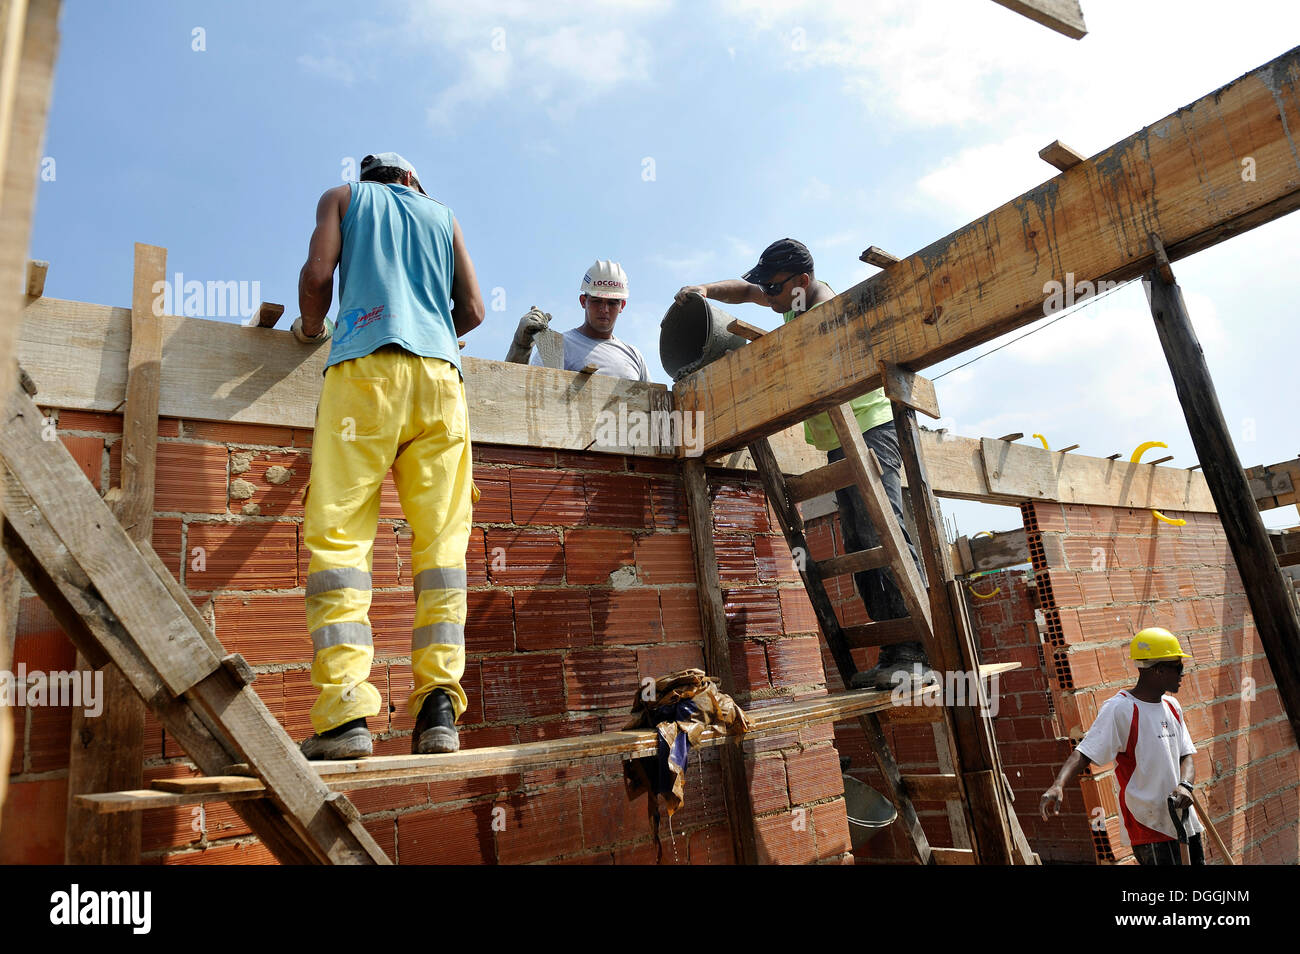 La gente de los barrios de tugurios, favelas, trabajando juntos en un sitio de construcción de la "esperança" cooperativa de vivienda, cada familia Foto de stock